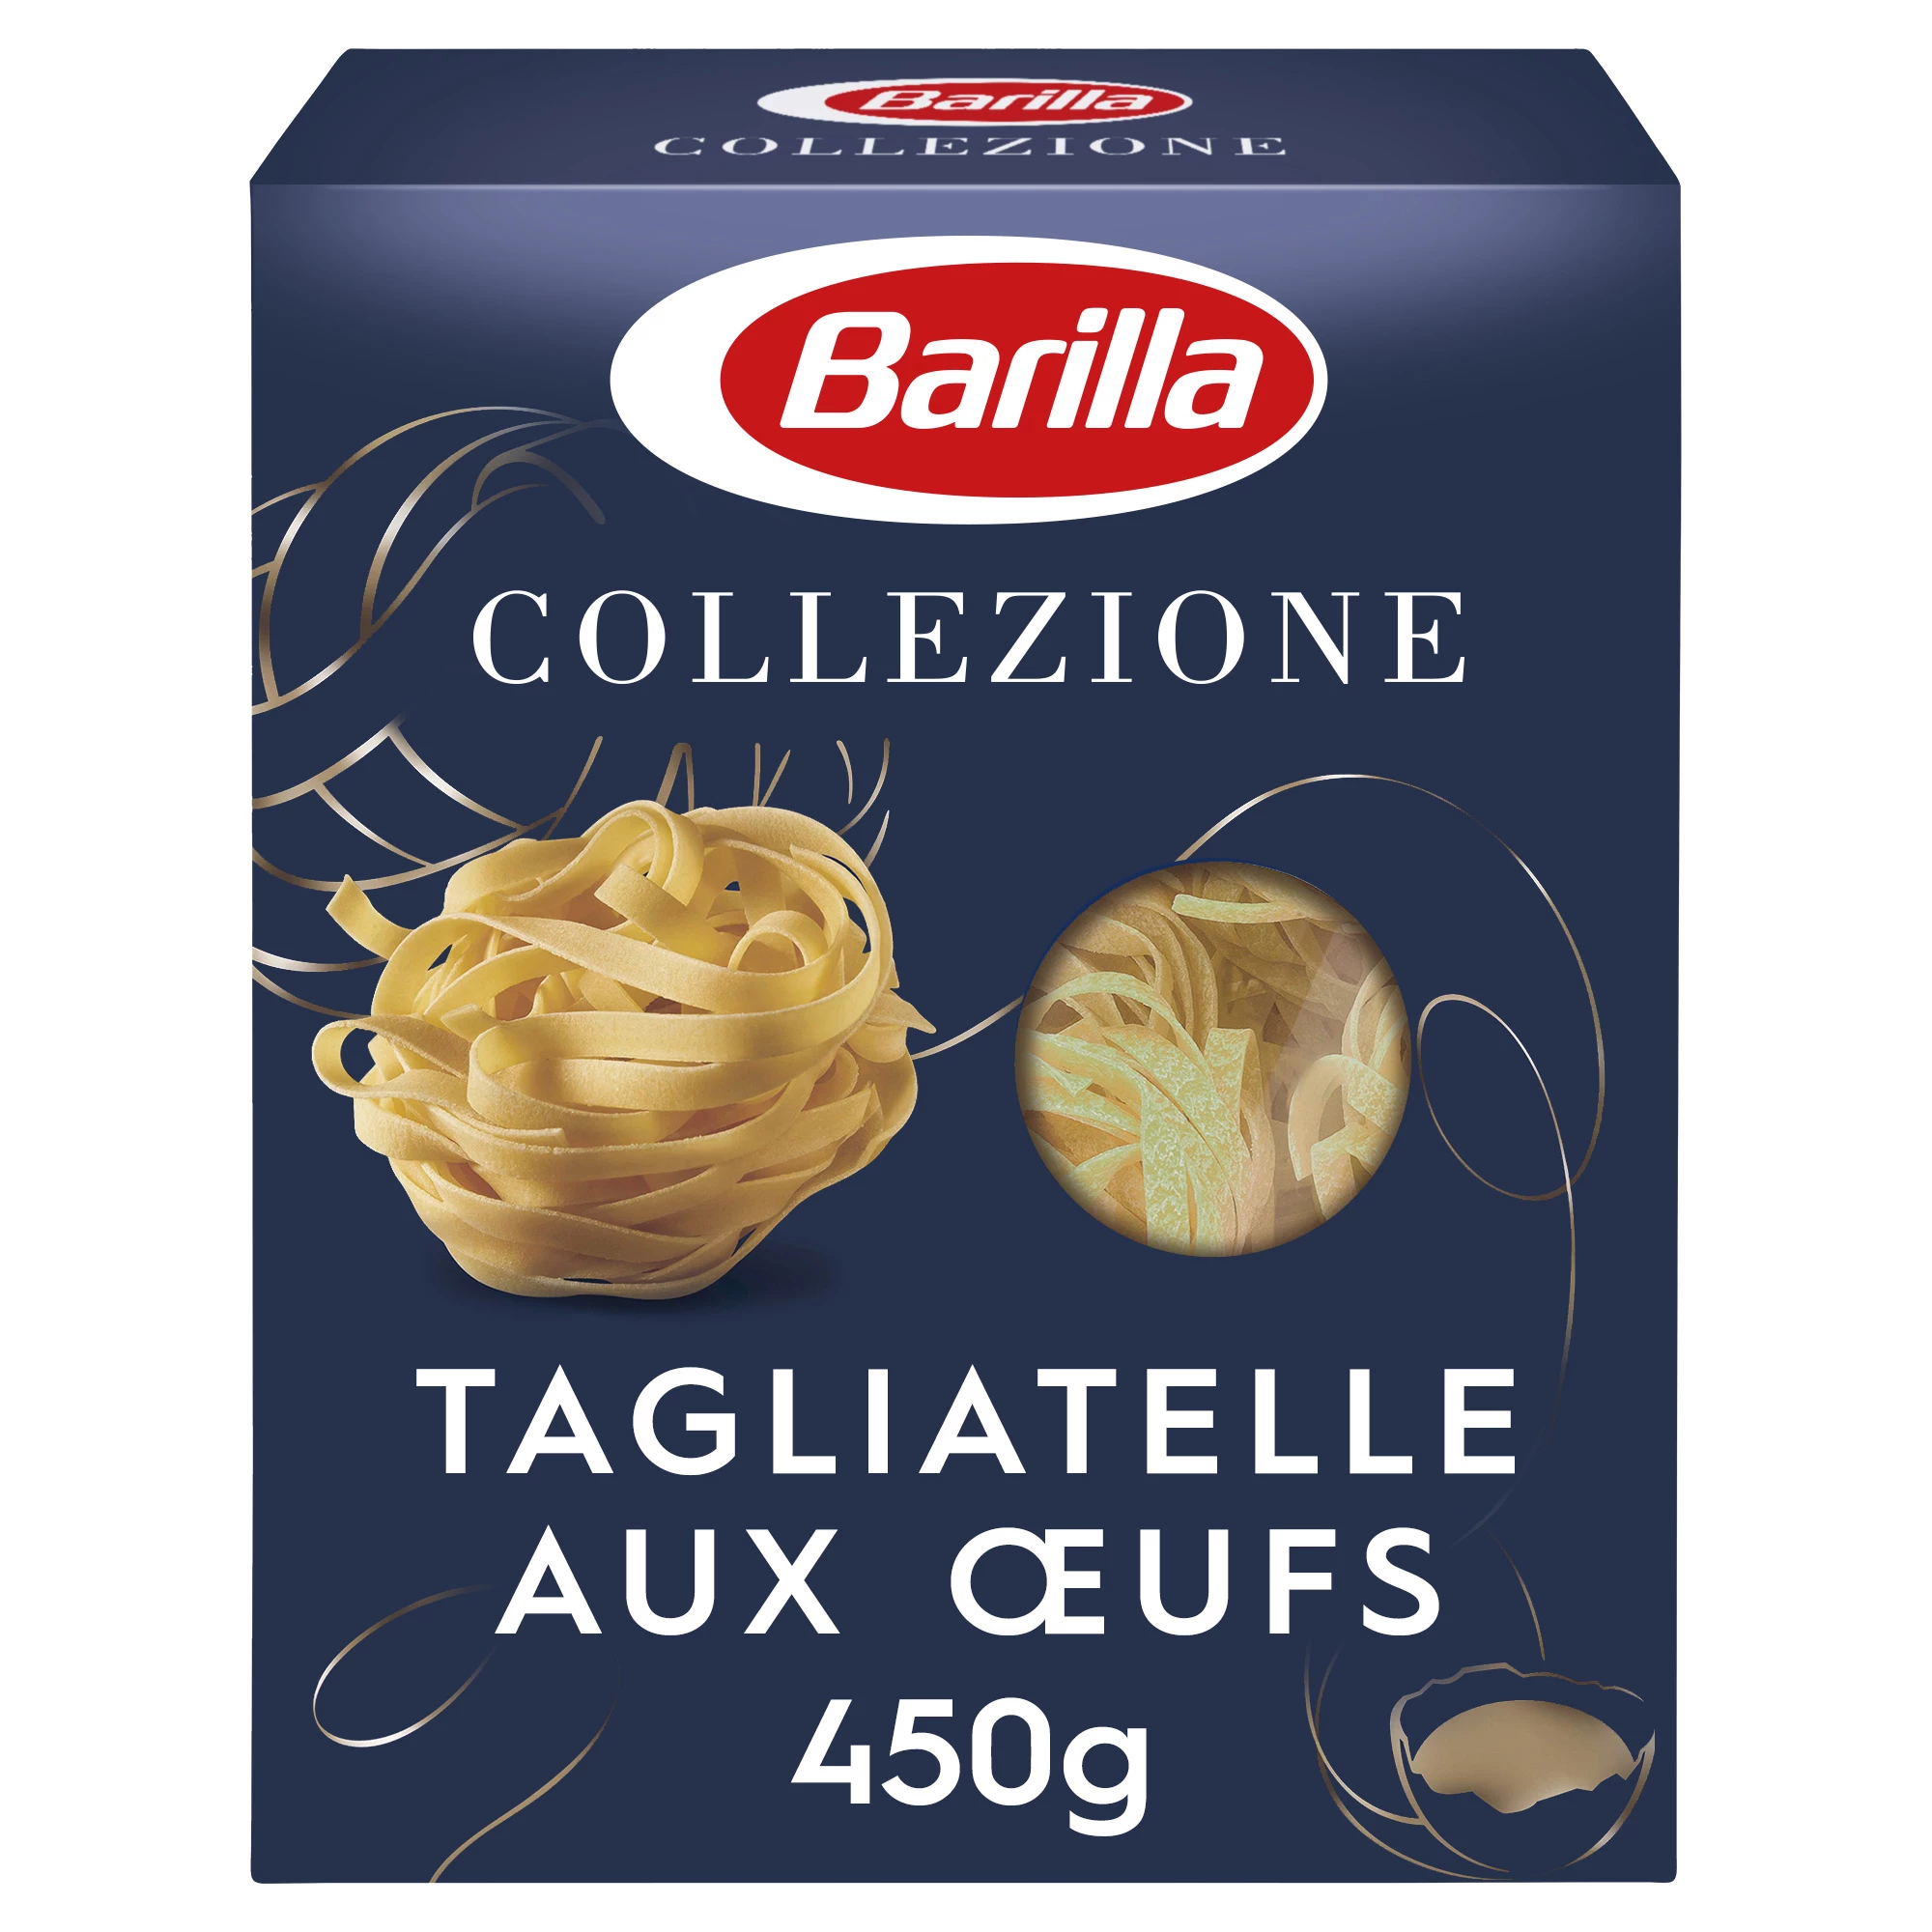 Pâtes Collezione Tagliatel les, 500g - BARILLA